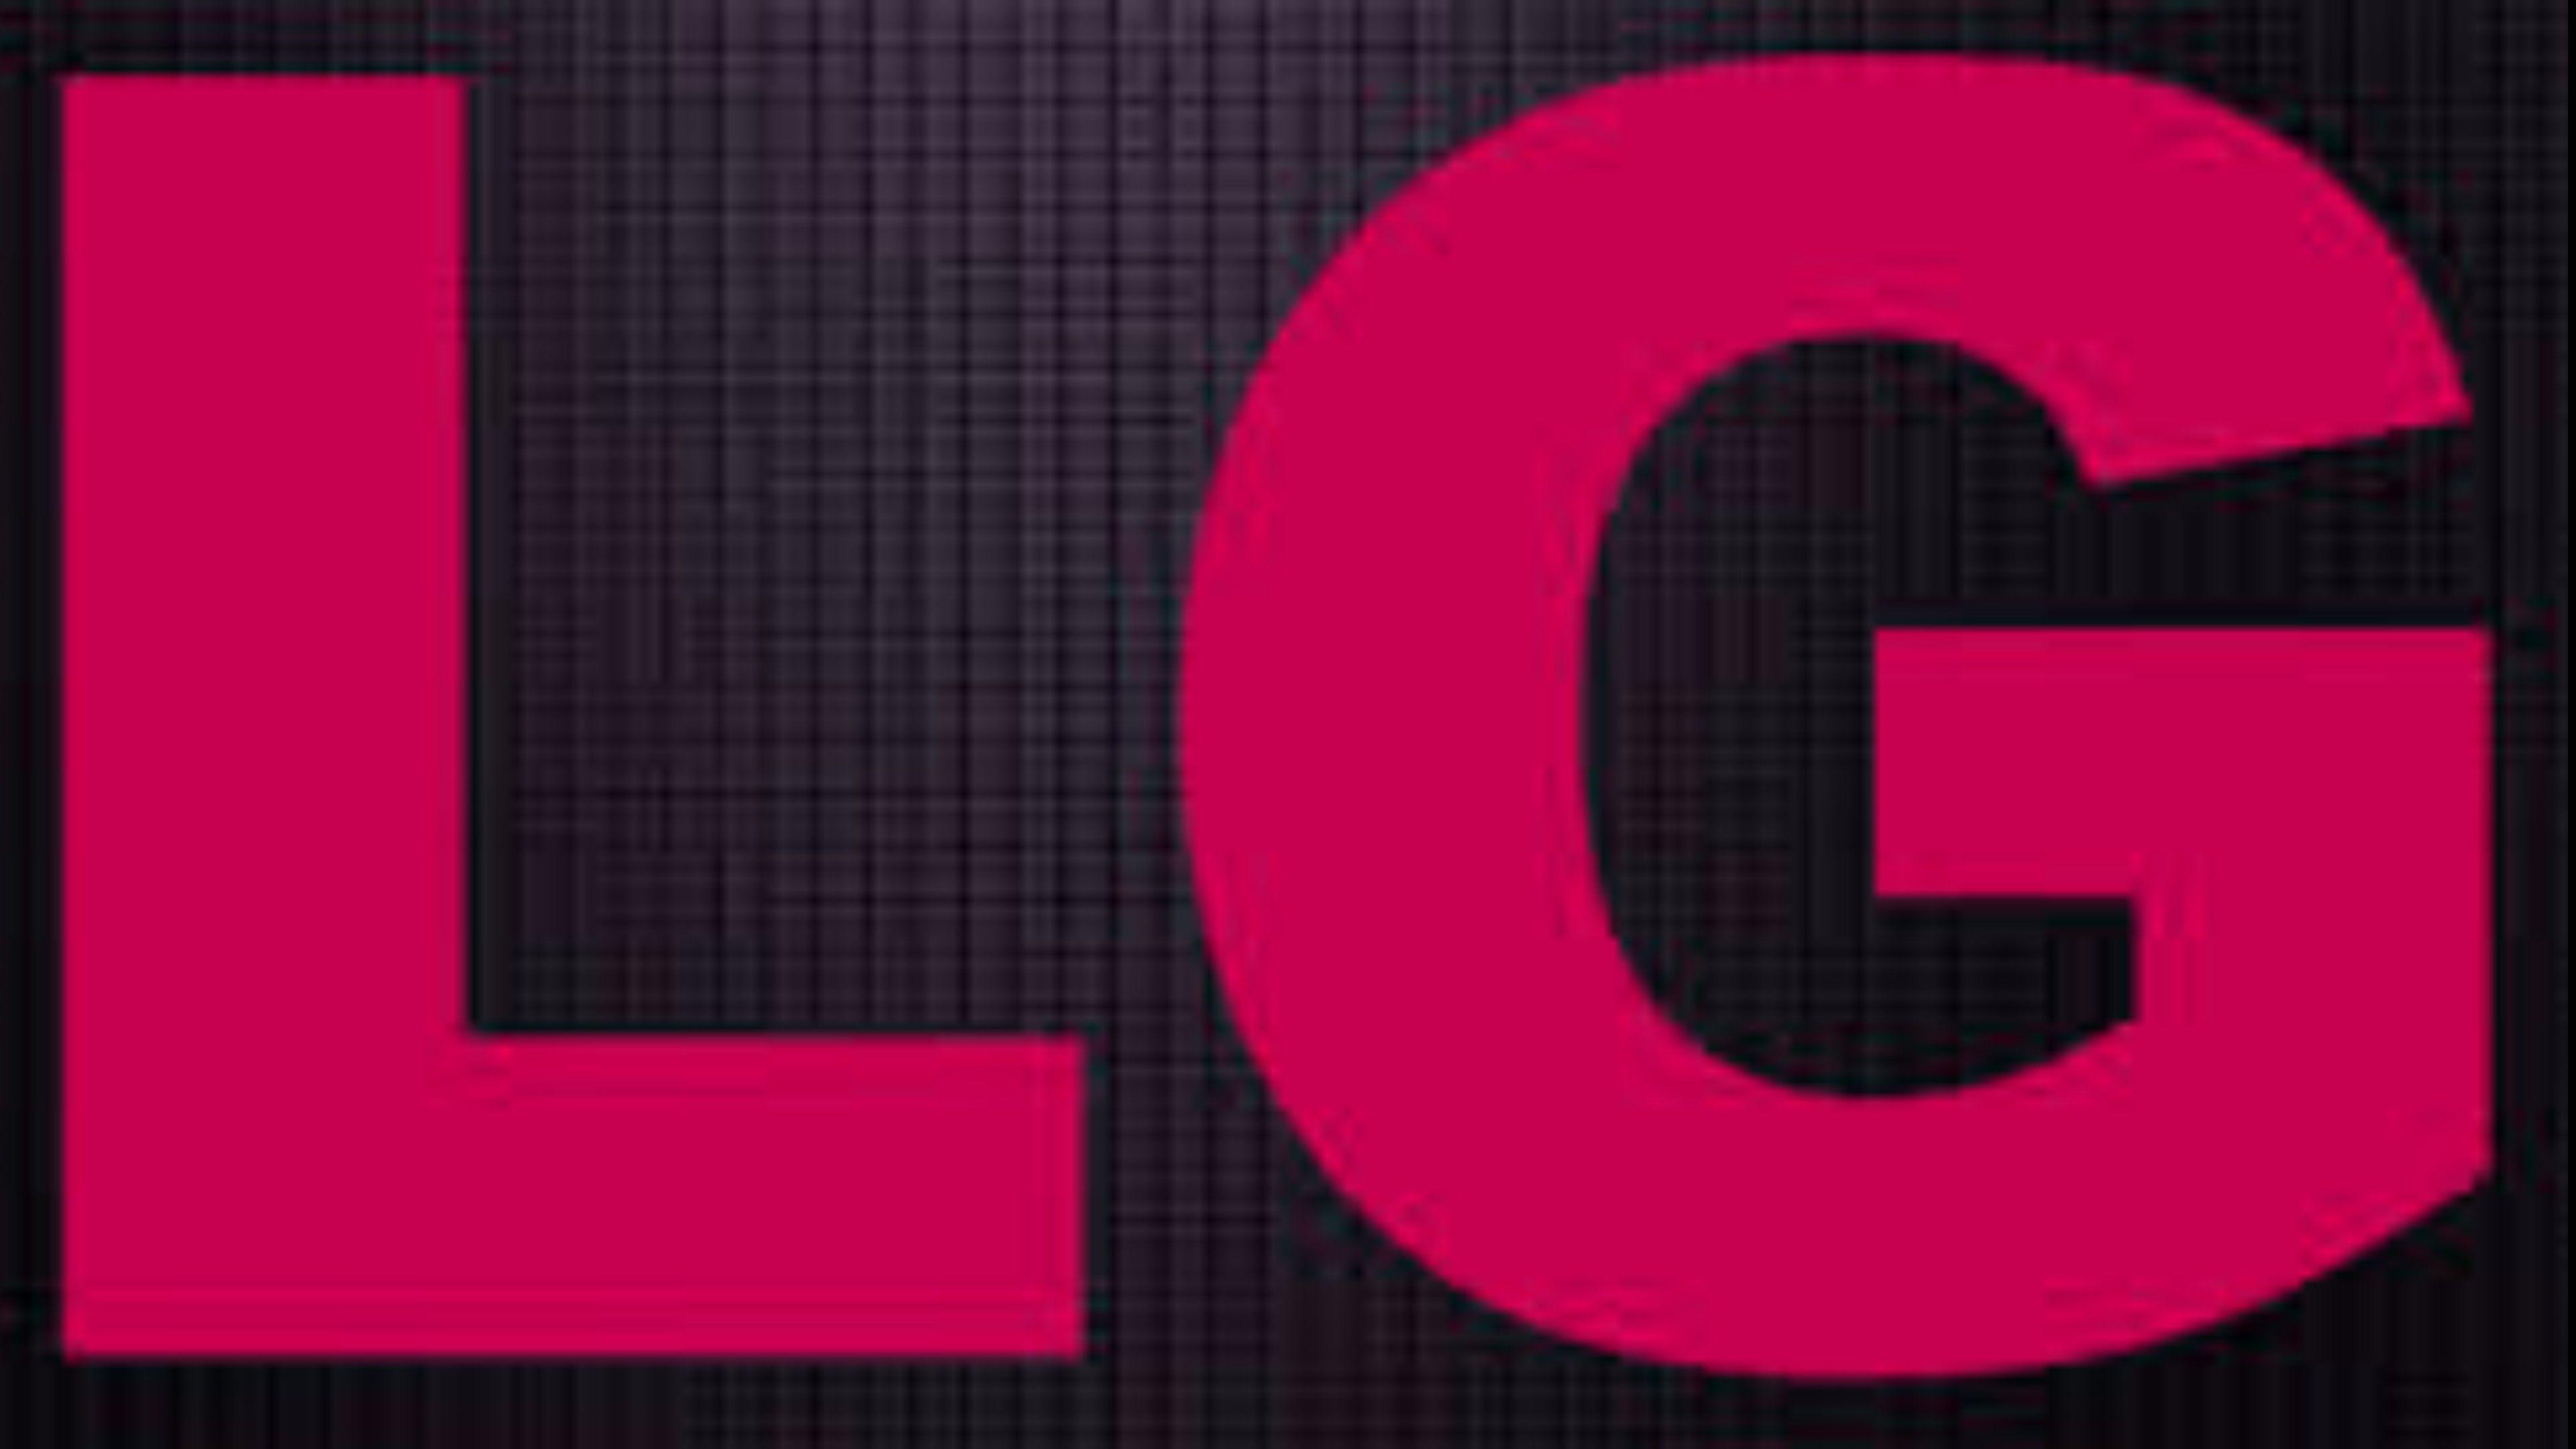 Pink LG Logo 4K Wallpaper. Free 4K Wallpaper